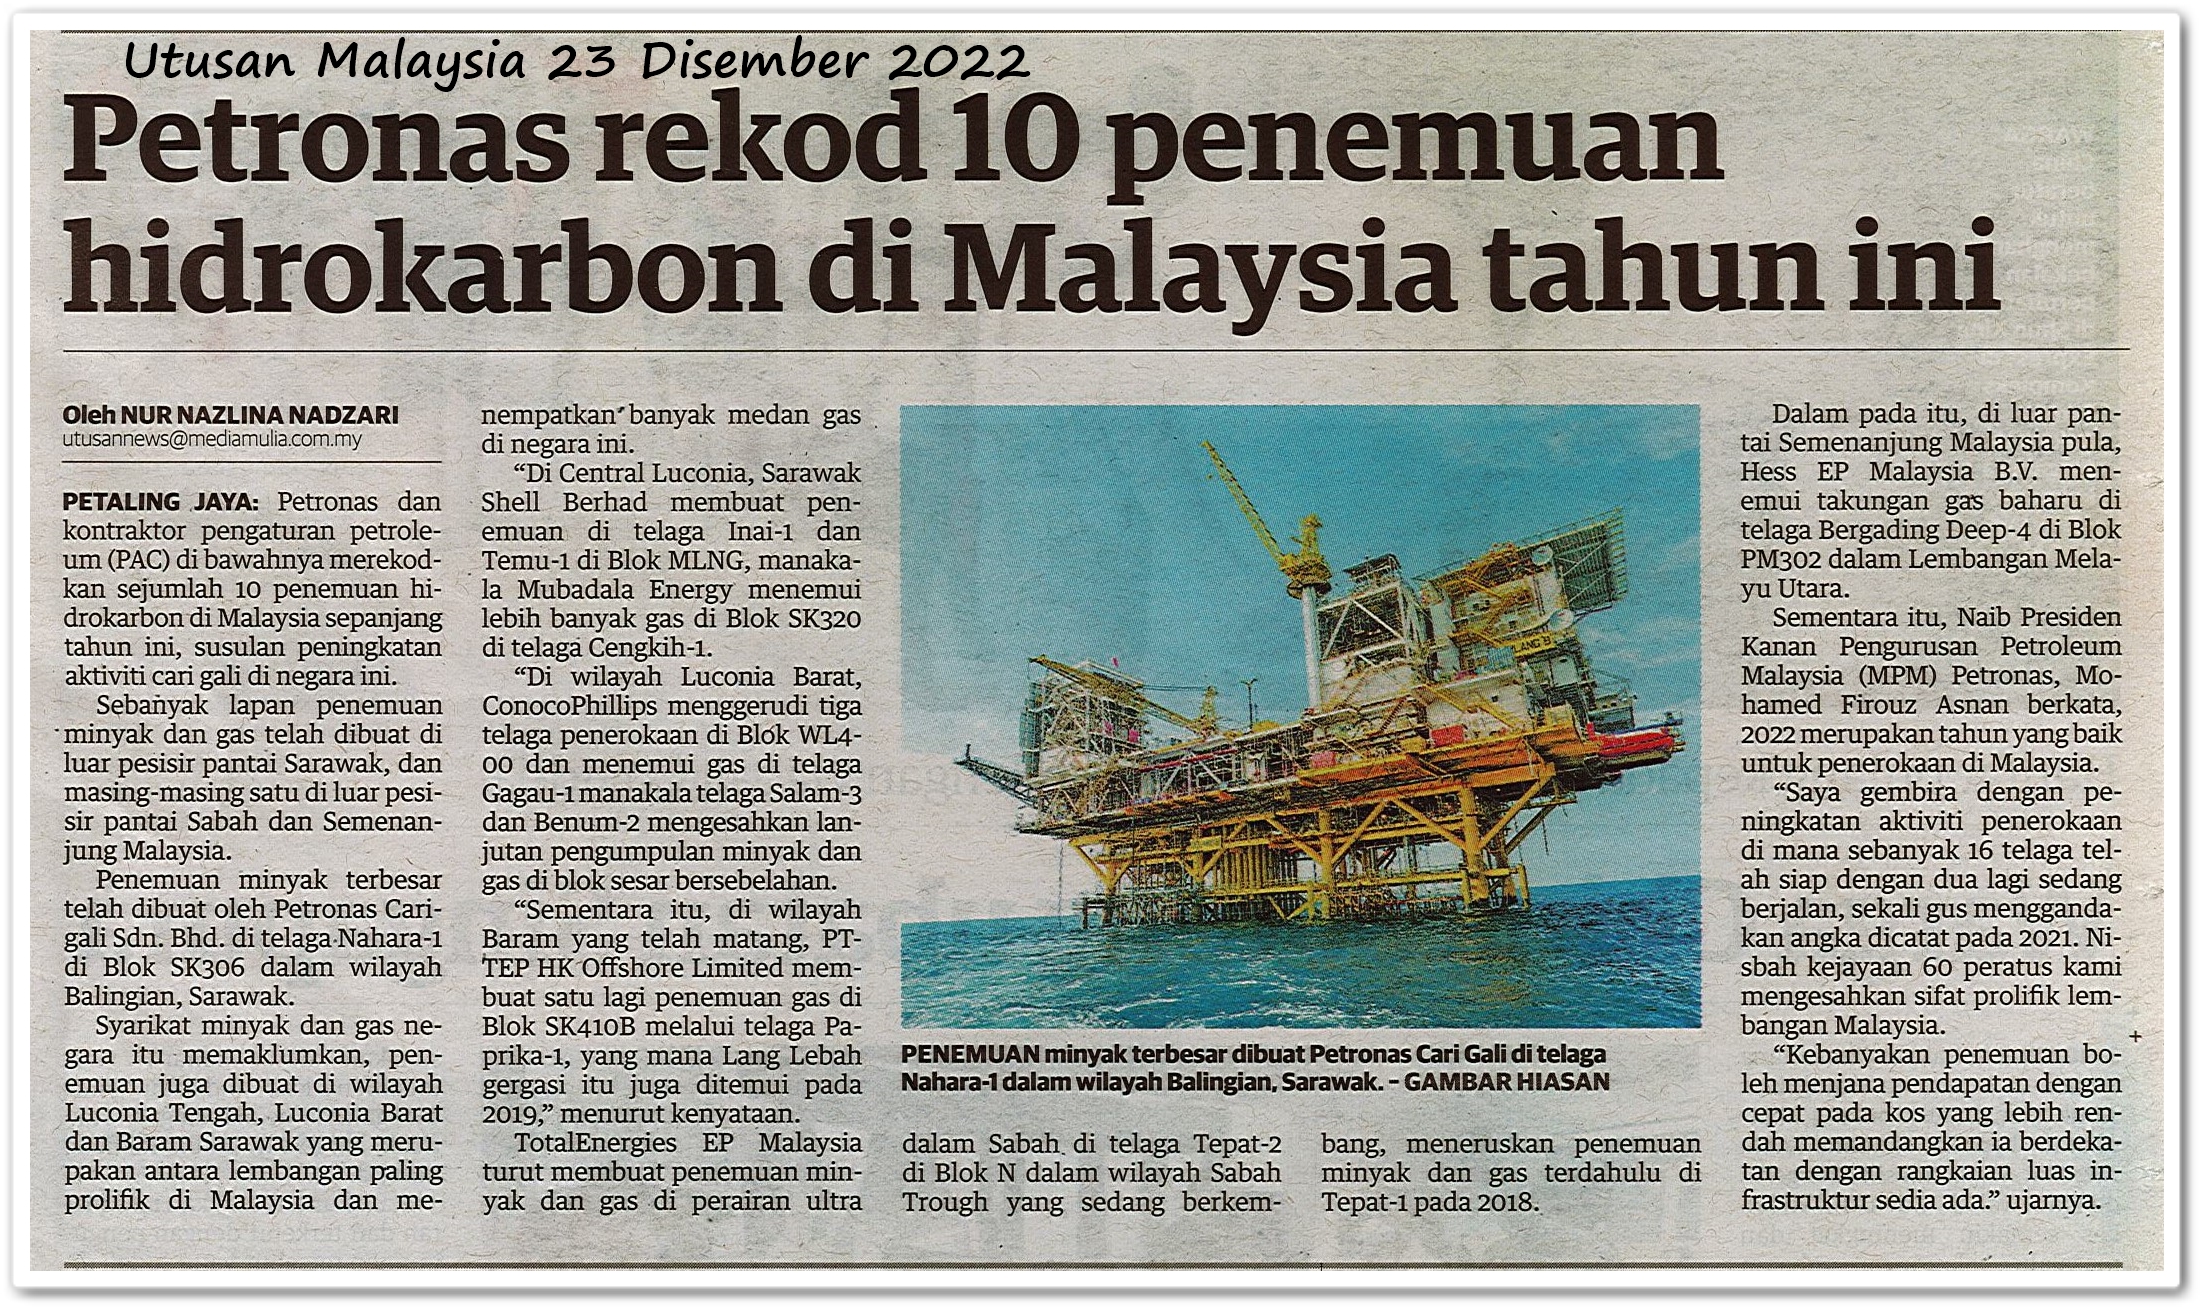 Petronas rekod 10 penemuan hidrokarbon di Malaysia tahun ini - Keratan akhbar Utusan Malaysia 23 Disember 2022